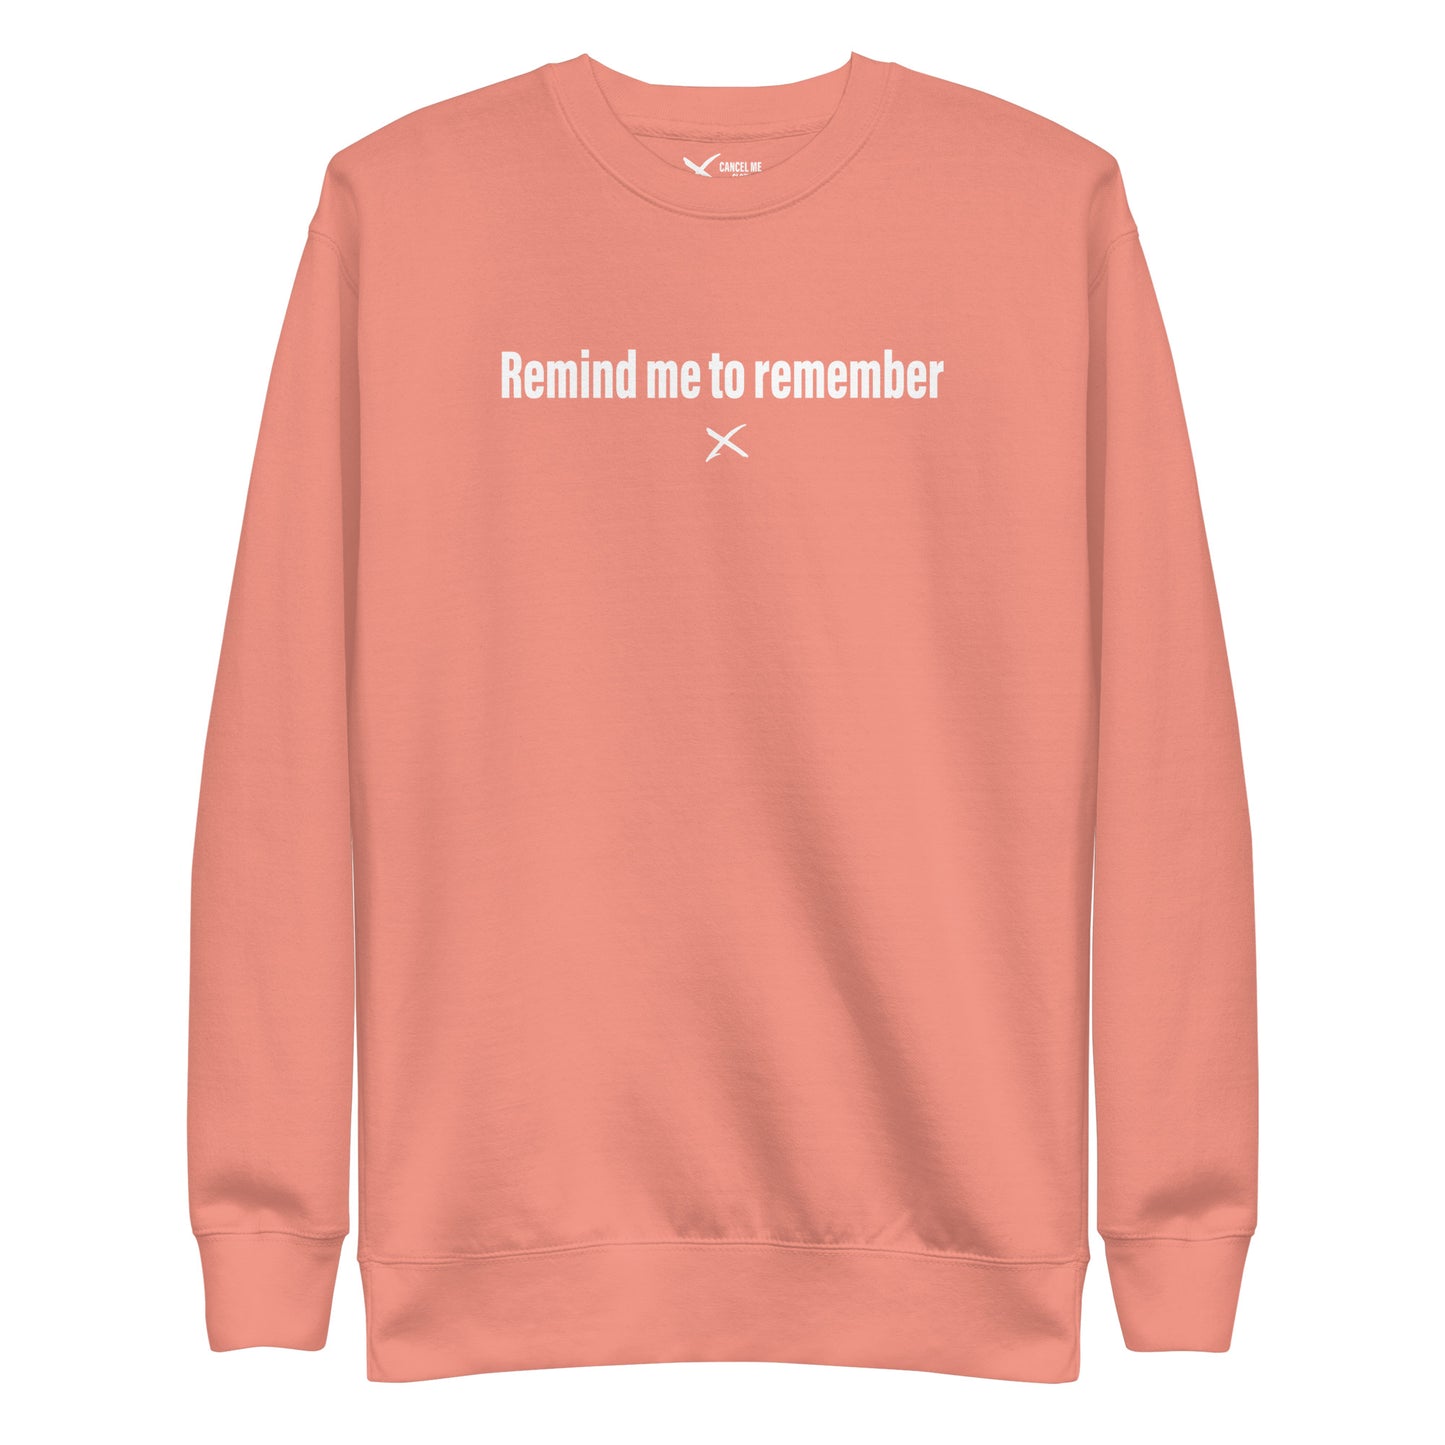 Remind me to remember - Sweatshirt